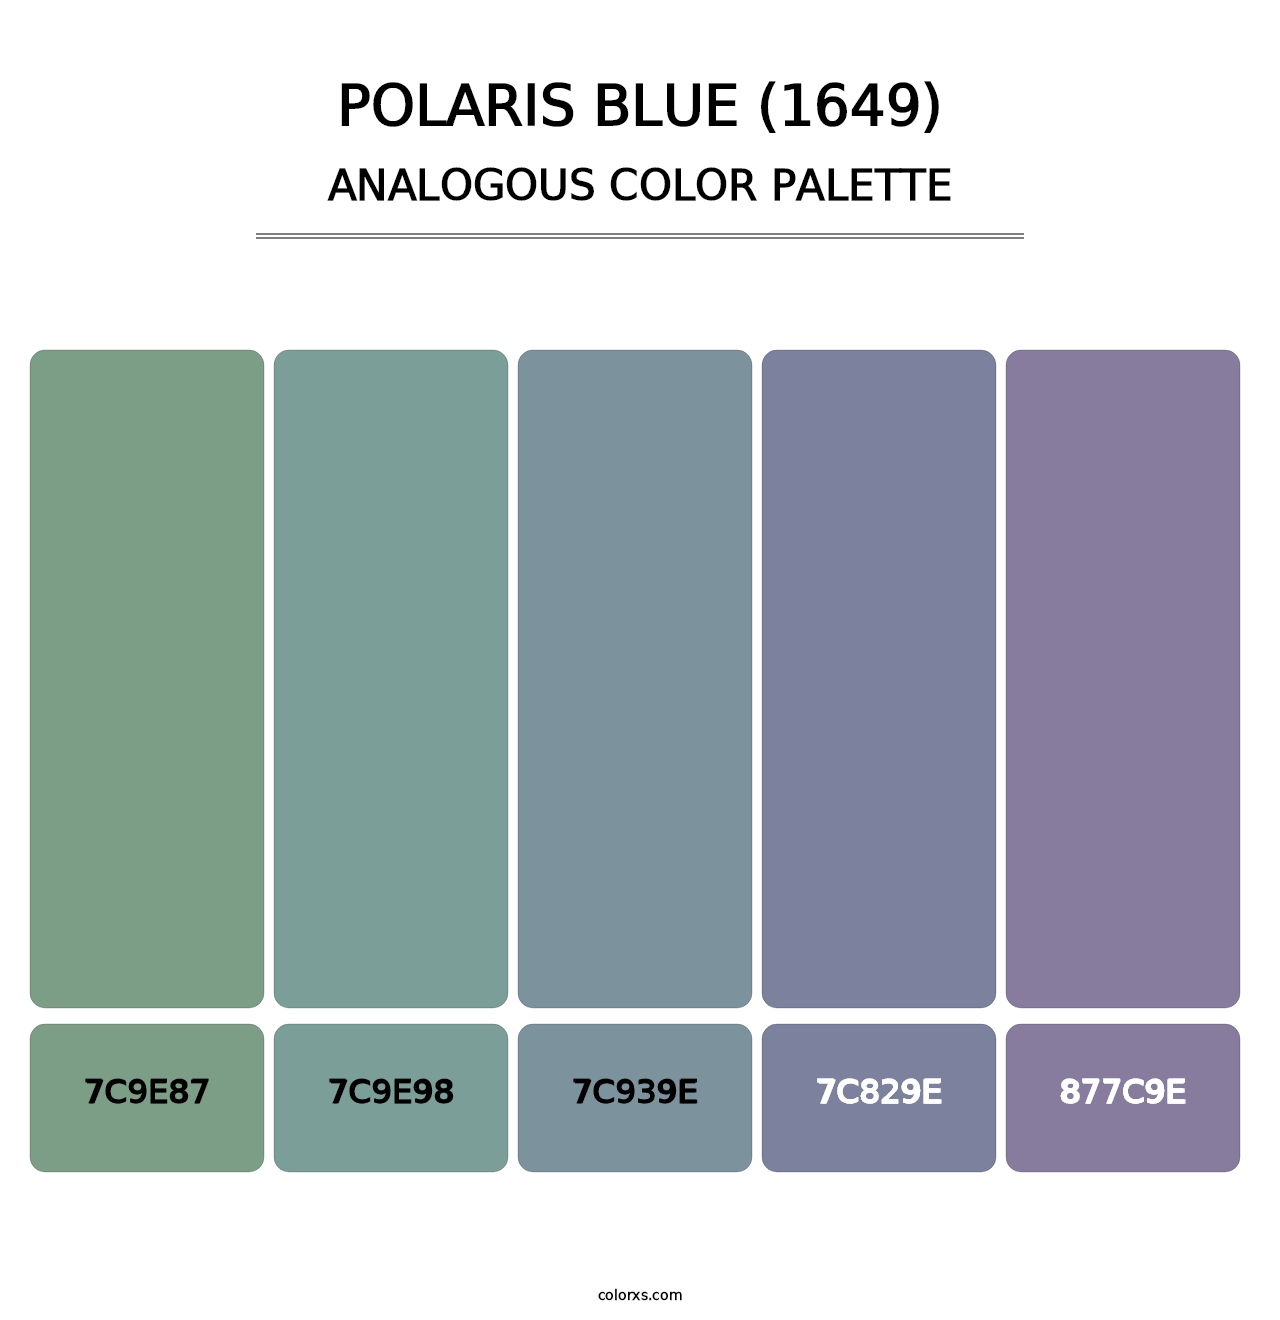 Polaris Blue (1649) - Analogous Color Palette